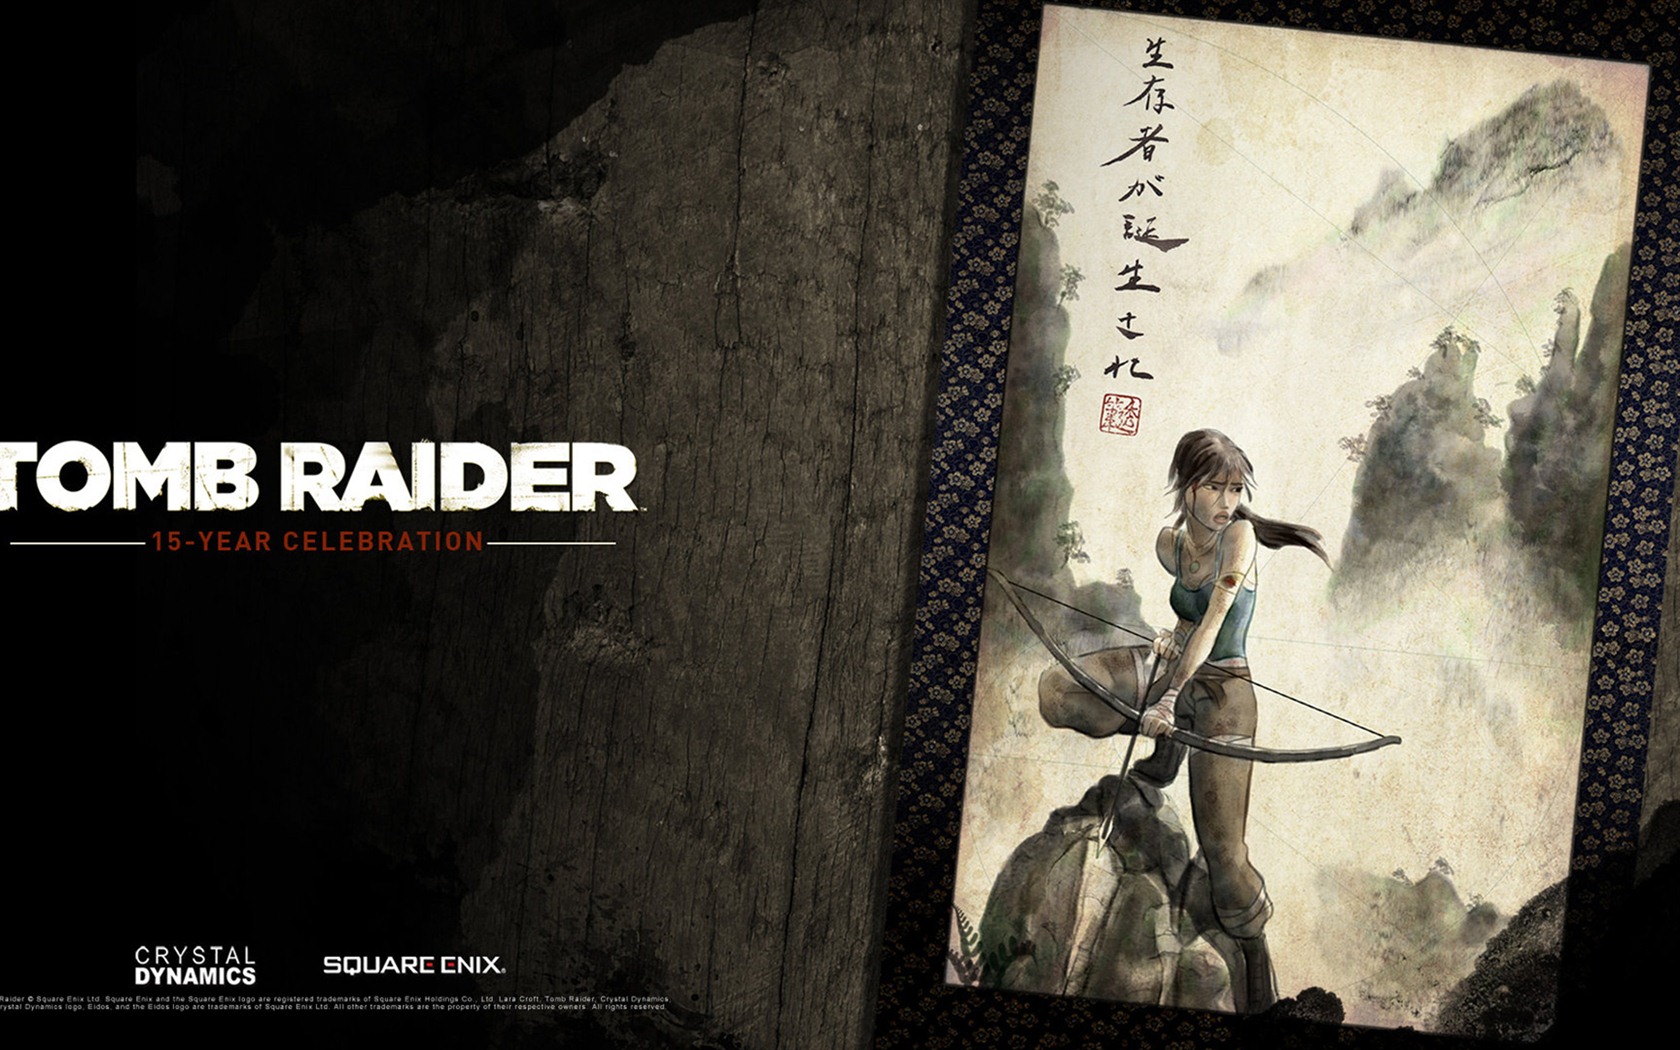 Tomb Raider 15-Year Celebration 古墓丽影15周年纪念版 高清壁纸14 - 1680x1050